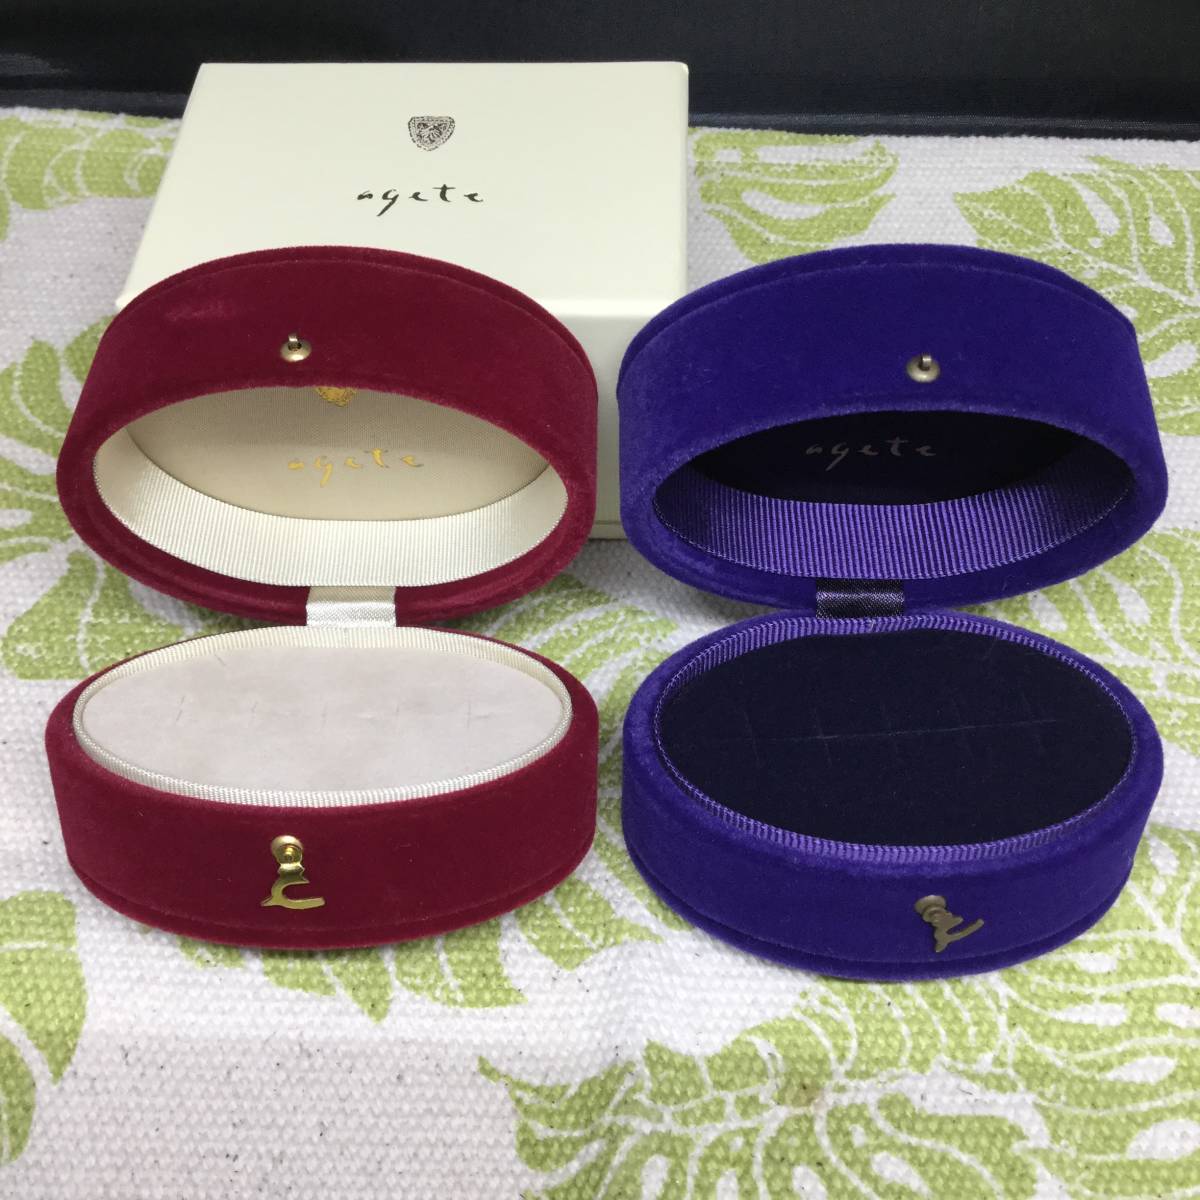 [M] agete Agete box коробка пустой коробка ювелирные изделия кейс бумажный пакет браслет assist фиолетовый защита пакет 